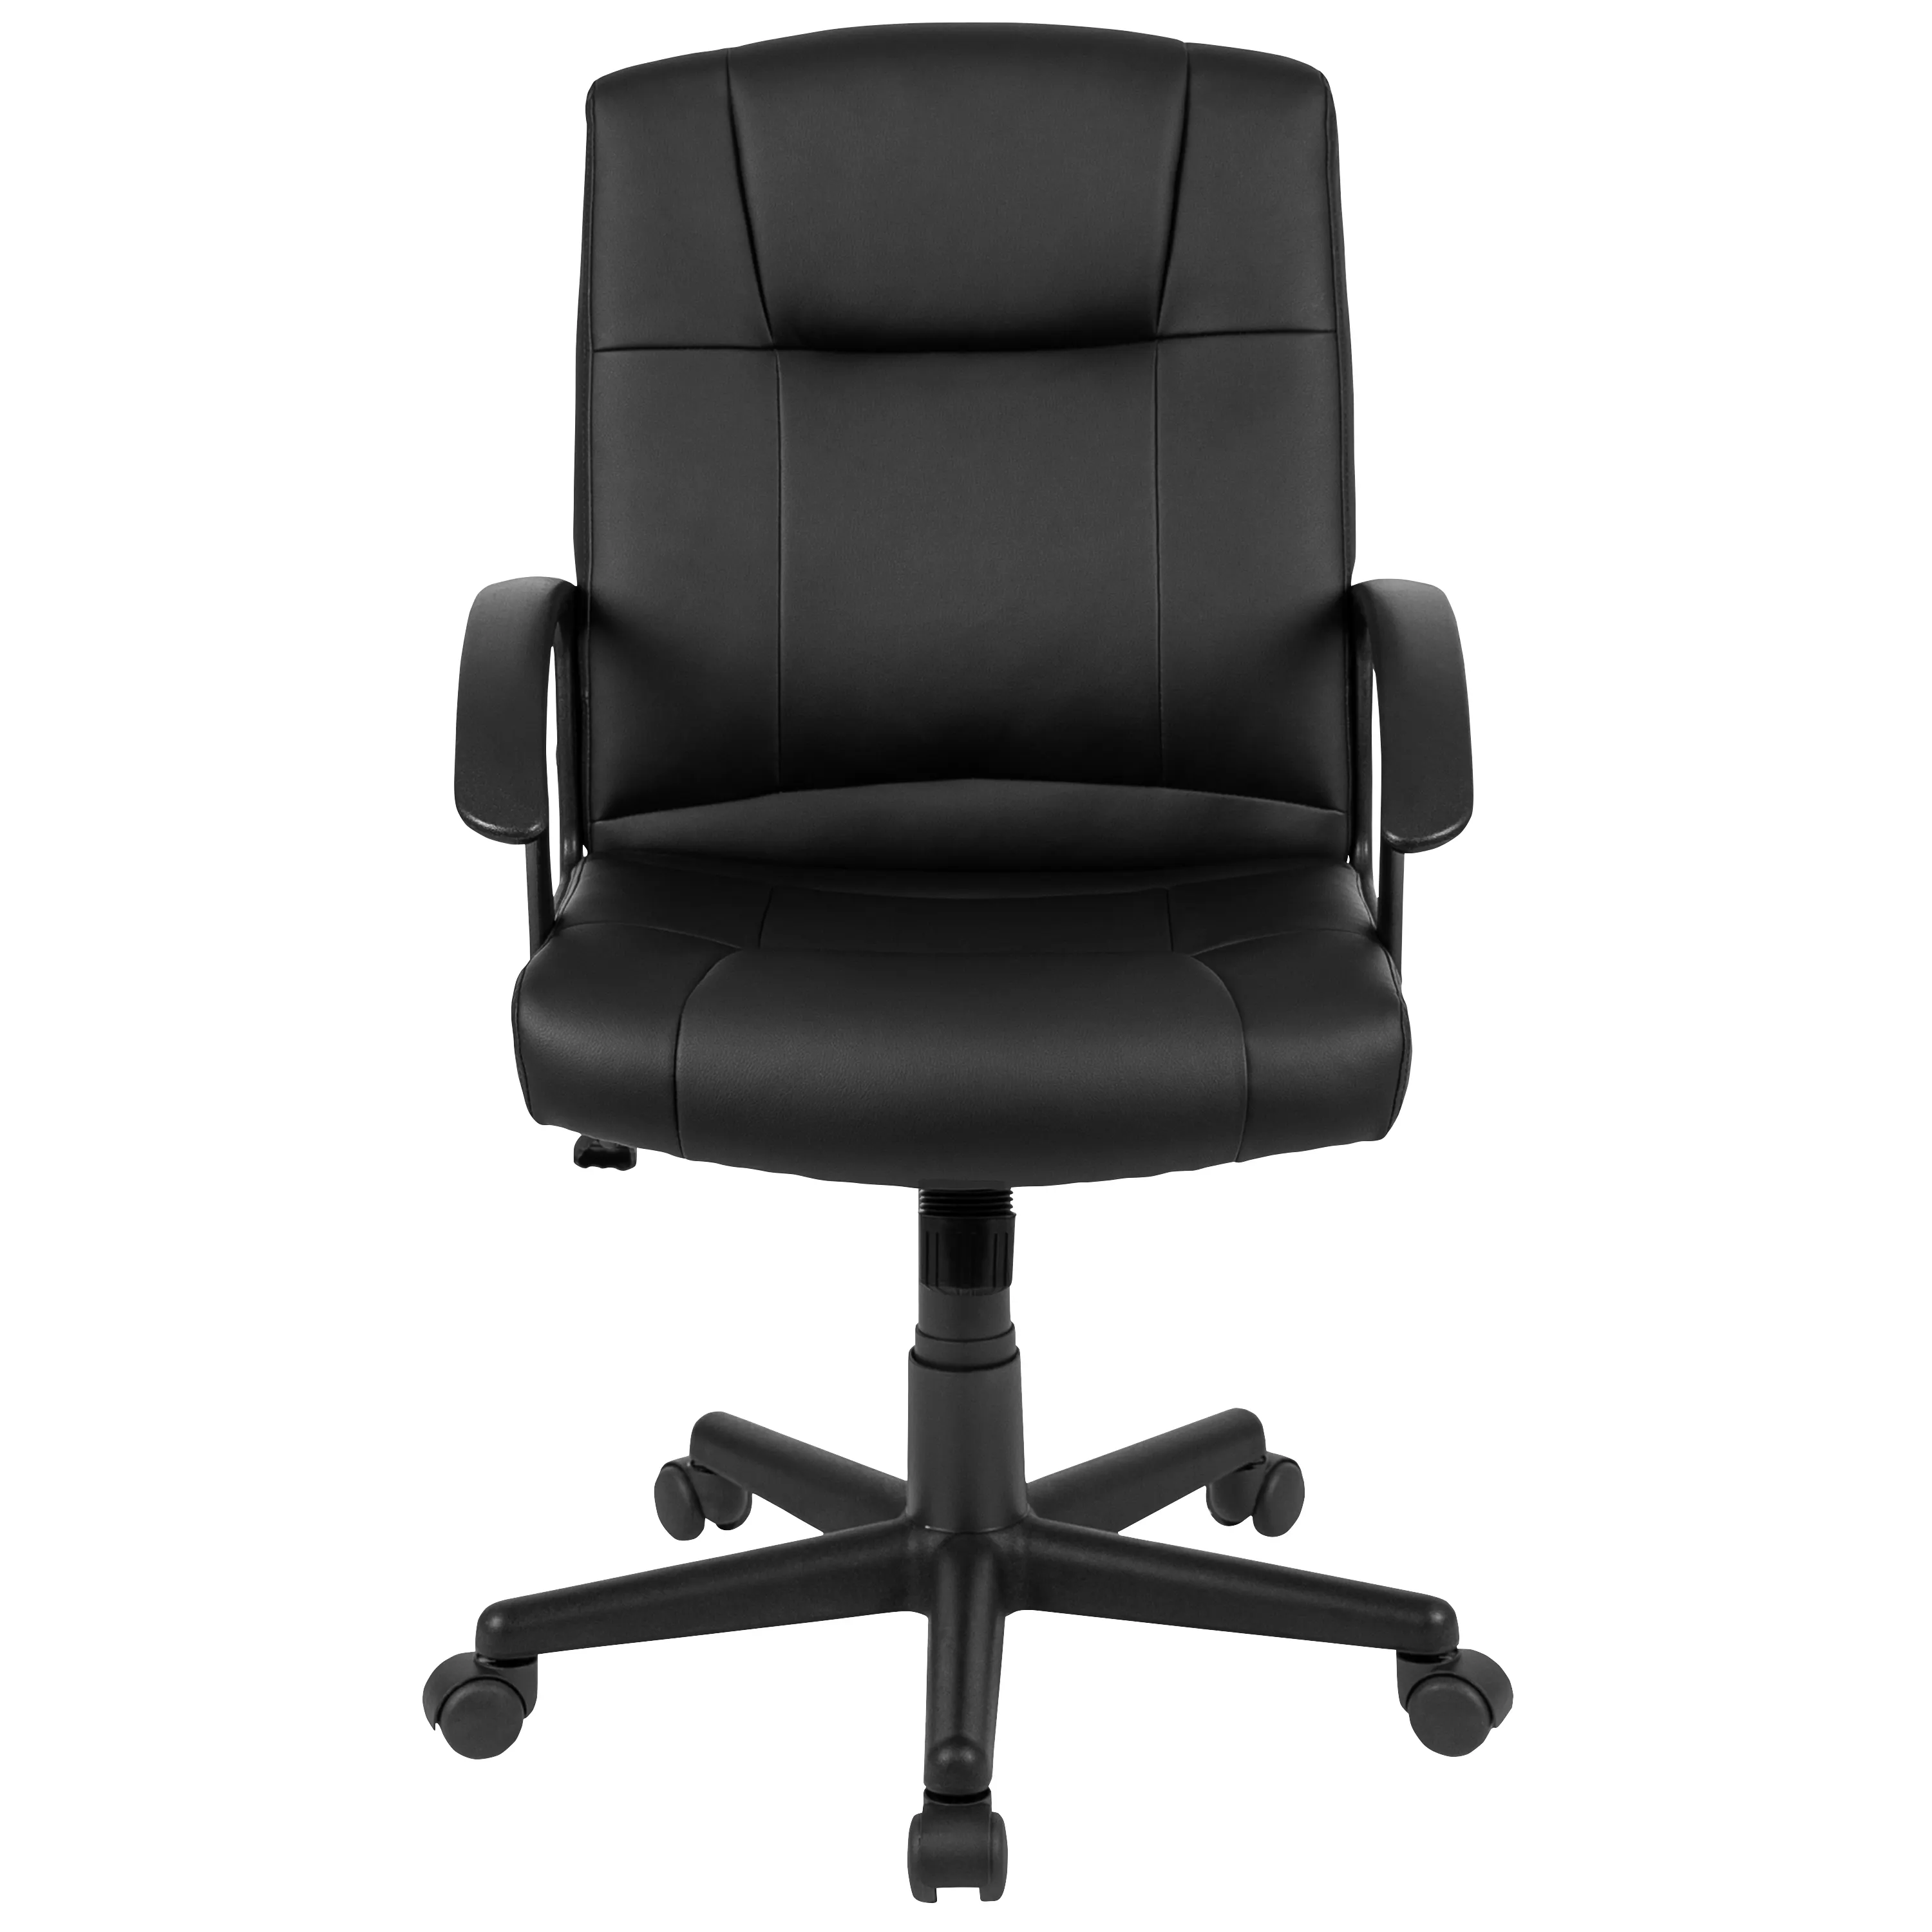 Muhtasar stil ofis koltuğu sabit kol dayama ile ve ayarlanabilir koltuk ofis koltuğu